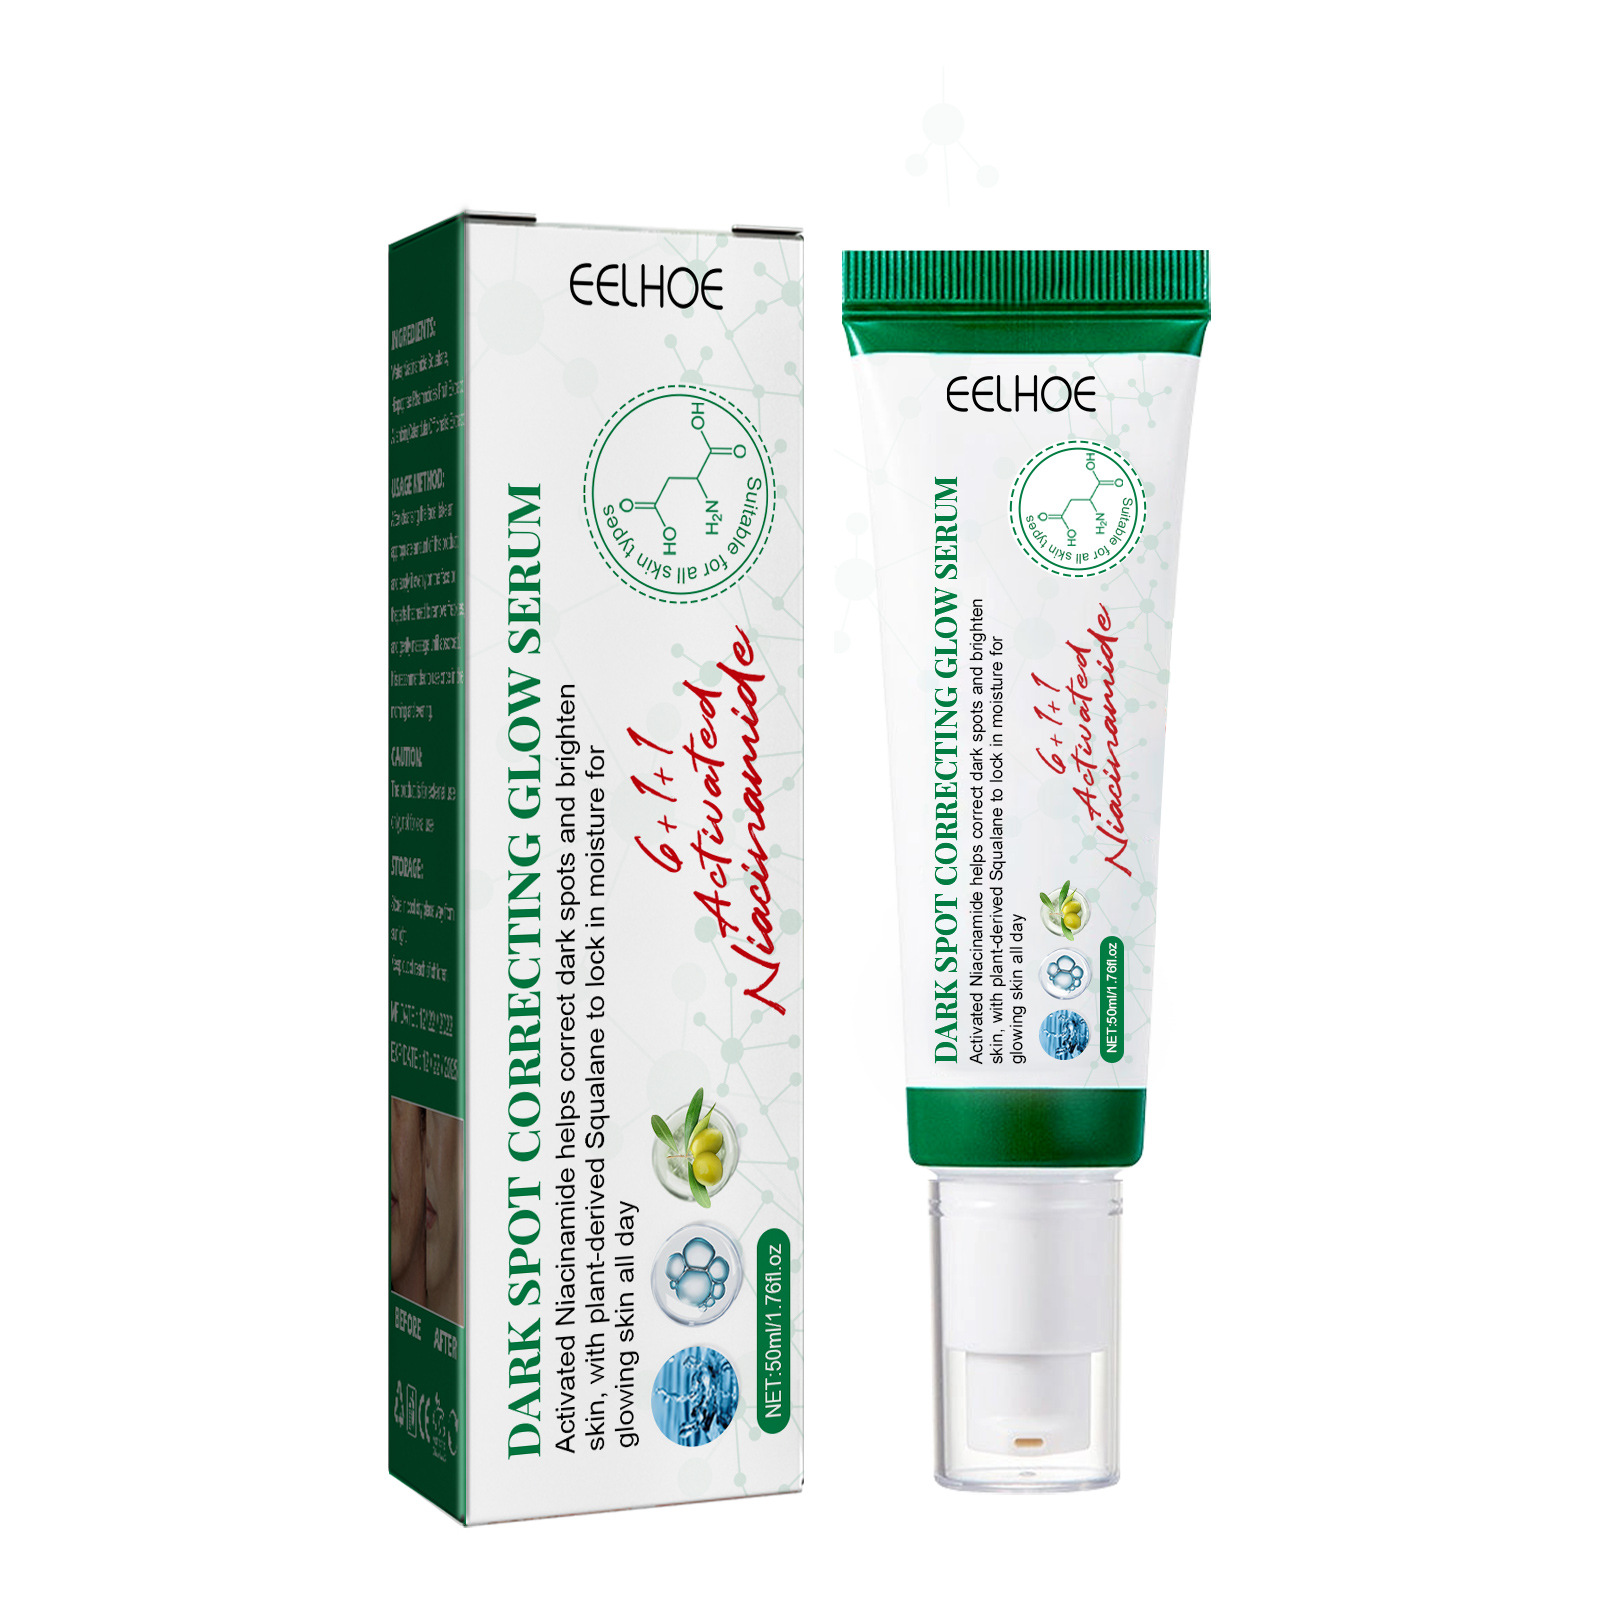 Eelhoe Fade Spots Brightening Essence Skin Beauty Skin Spots Freckles Melanin Repair Dark Skin Care